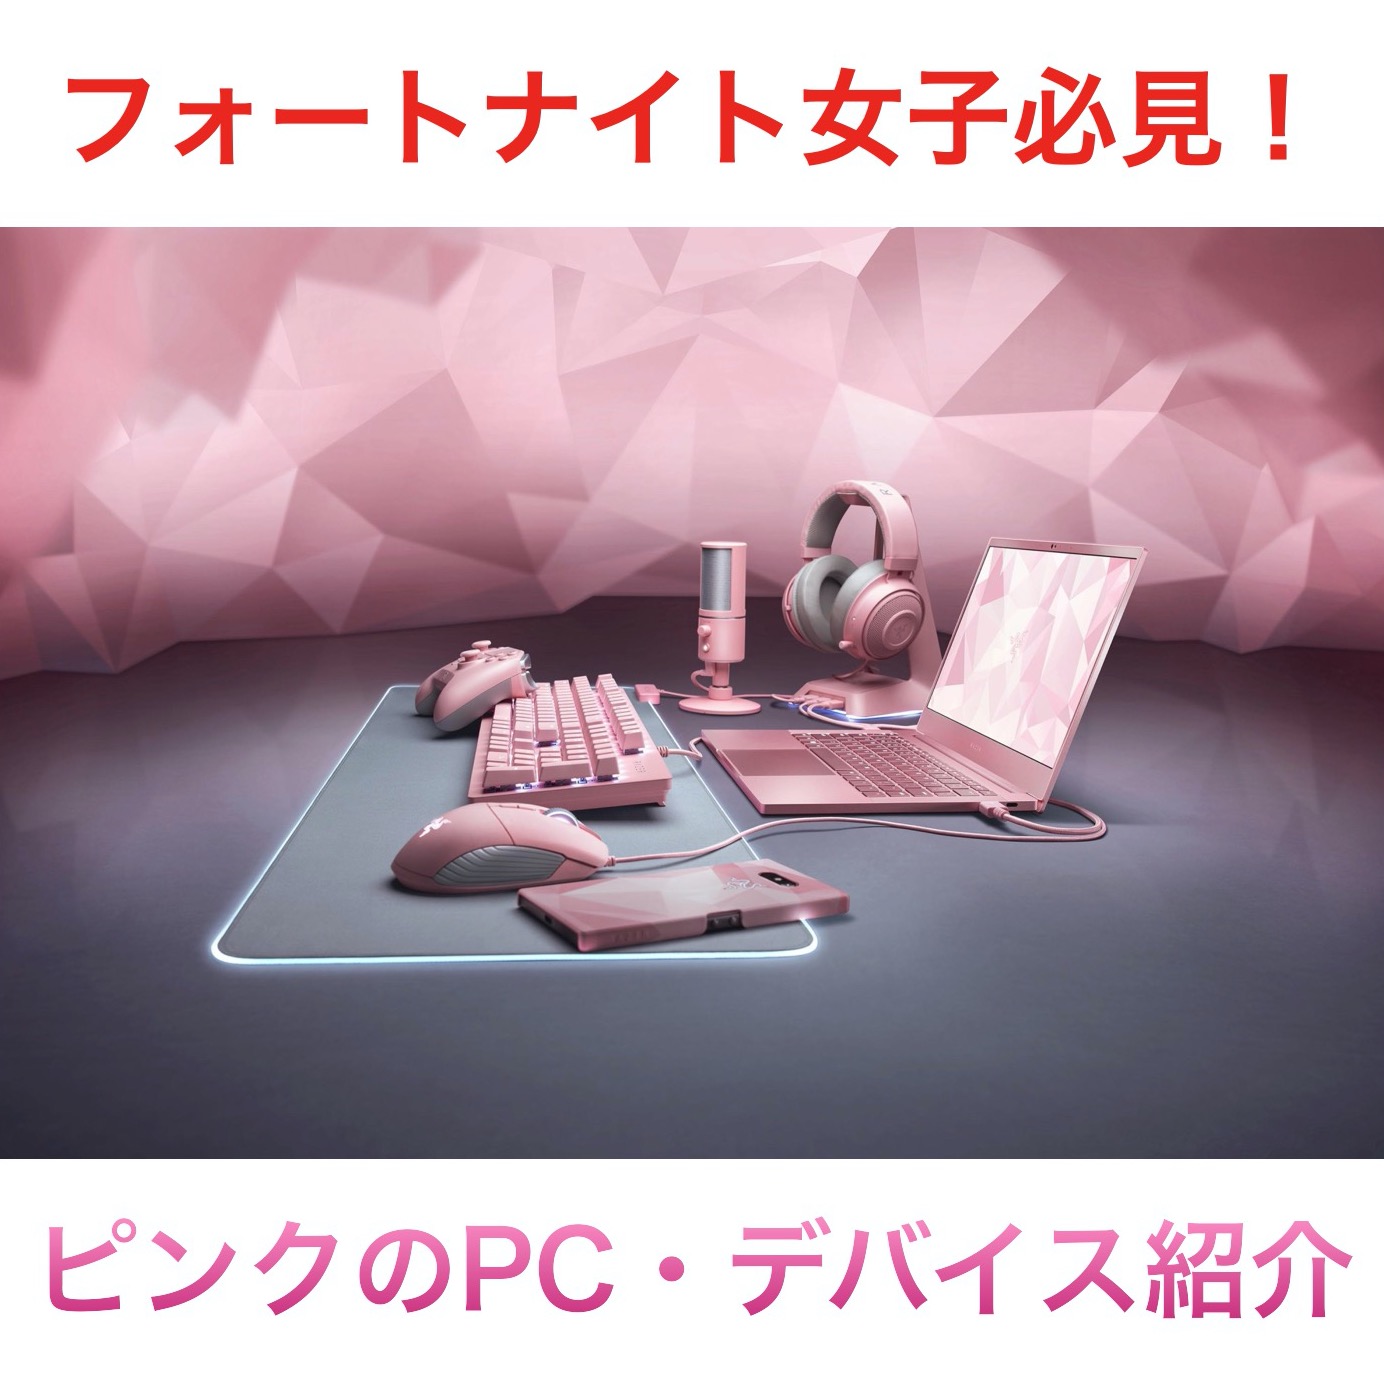 【フォートナイト女子】ピンク色のゲーミングPC・デバイスを紹介！